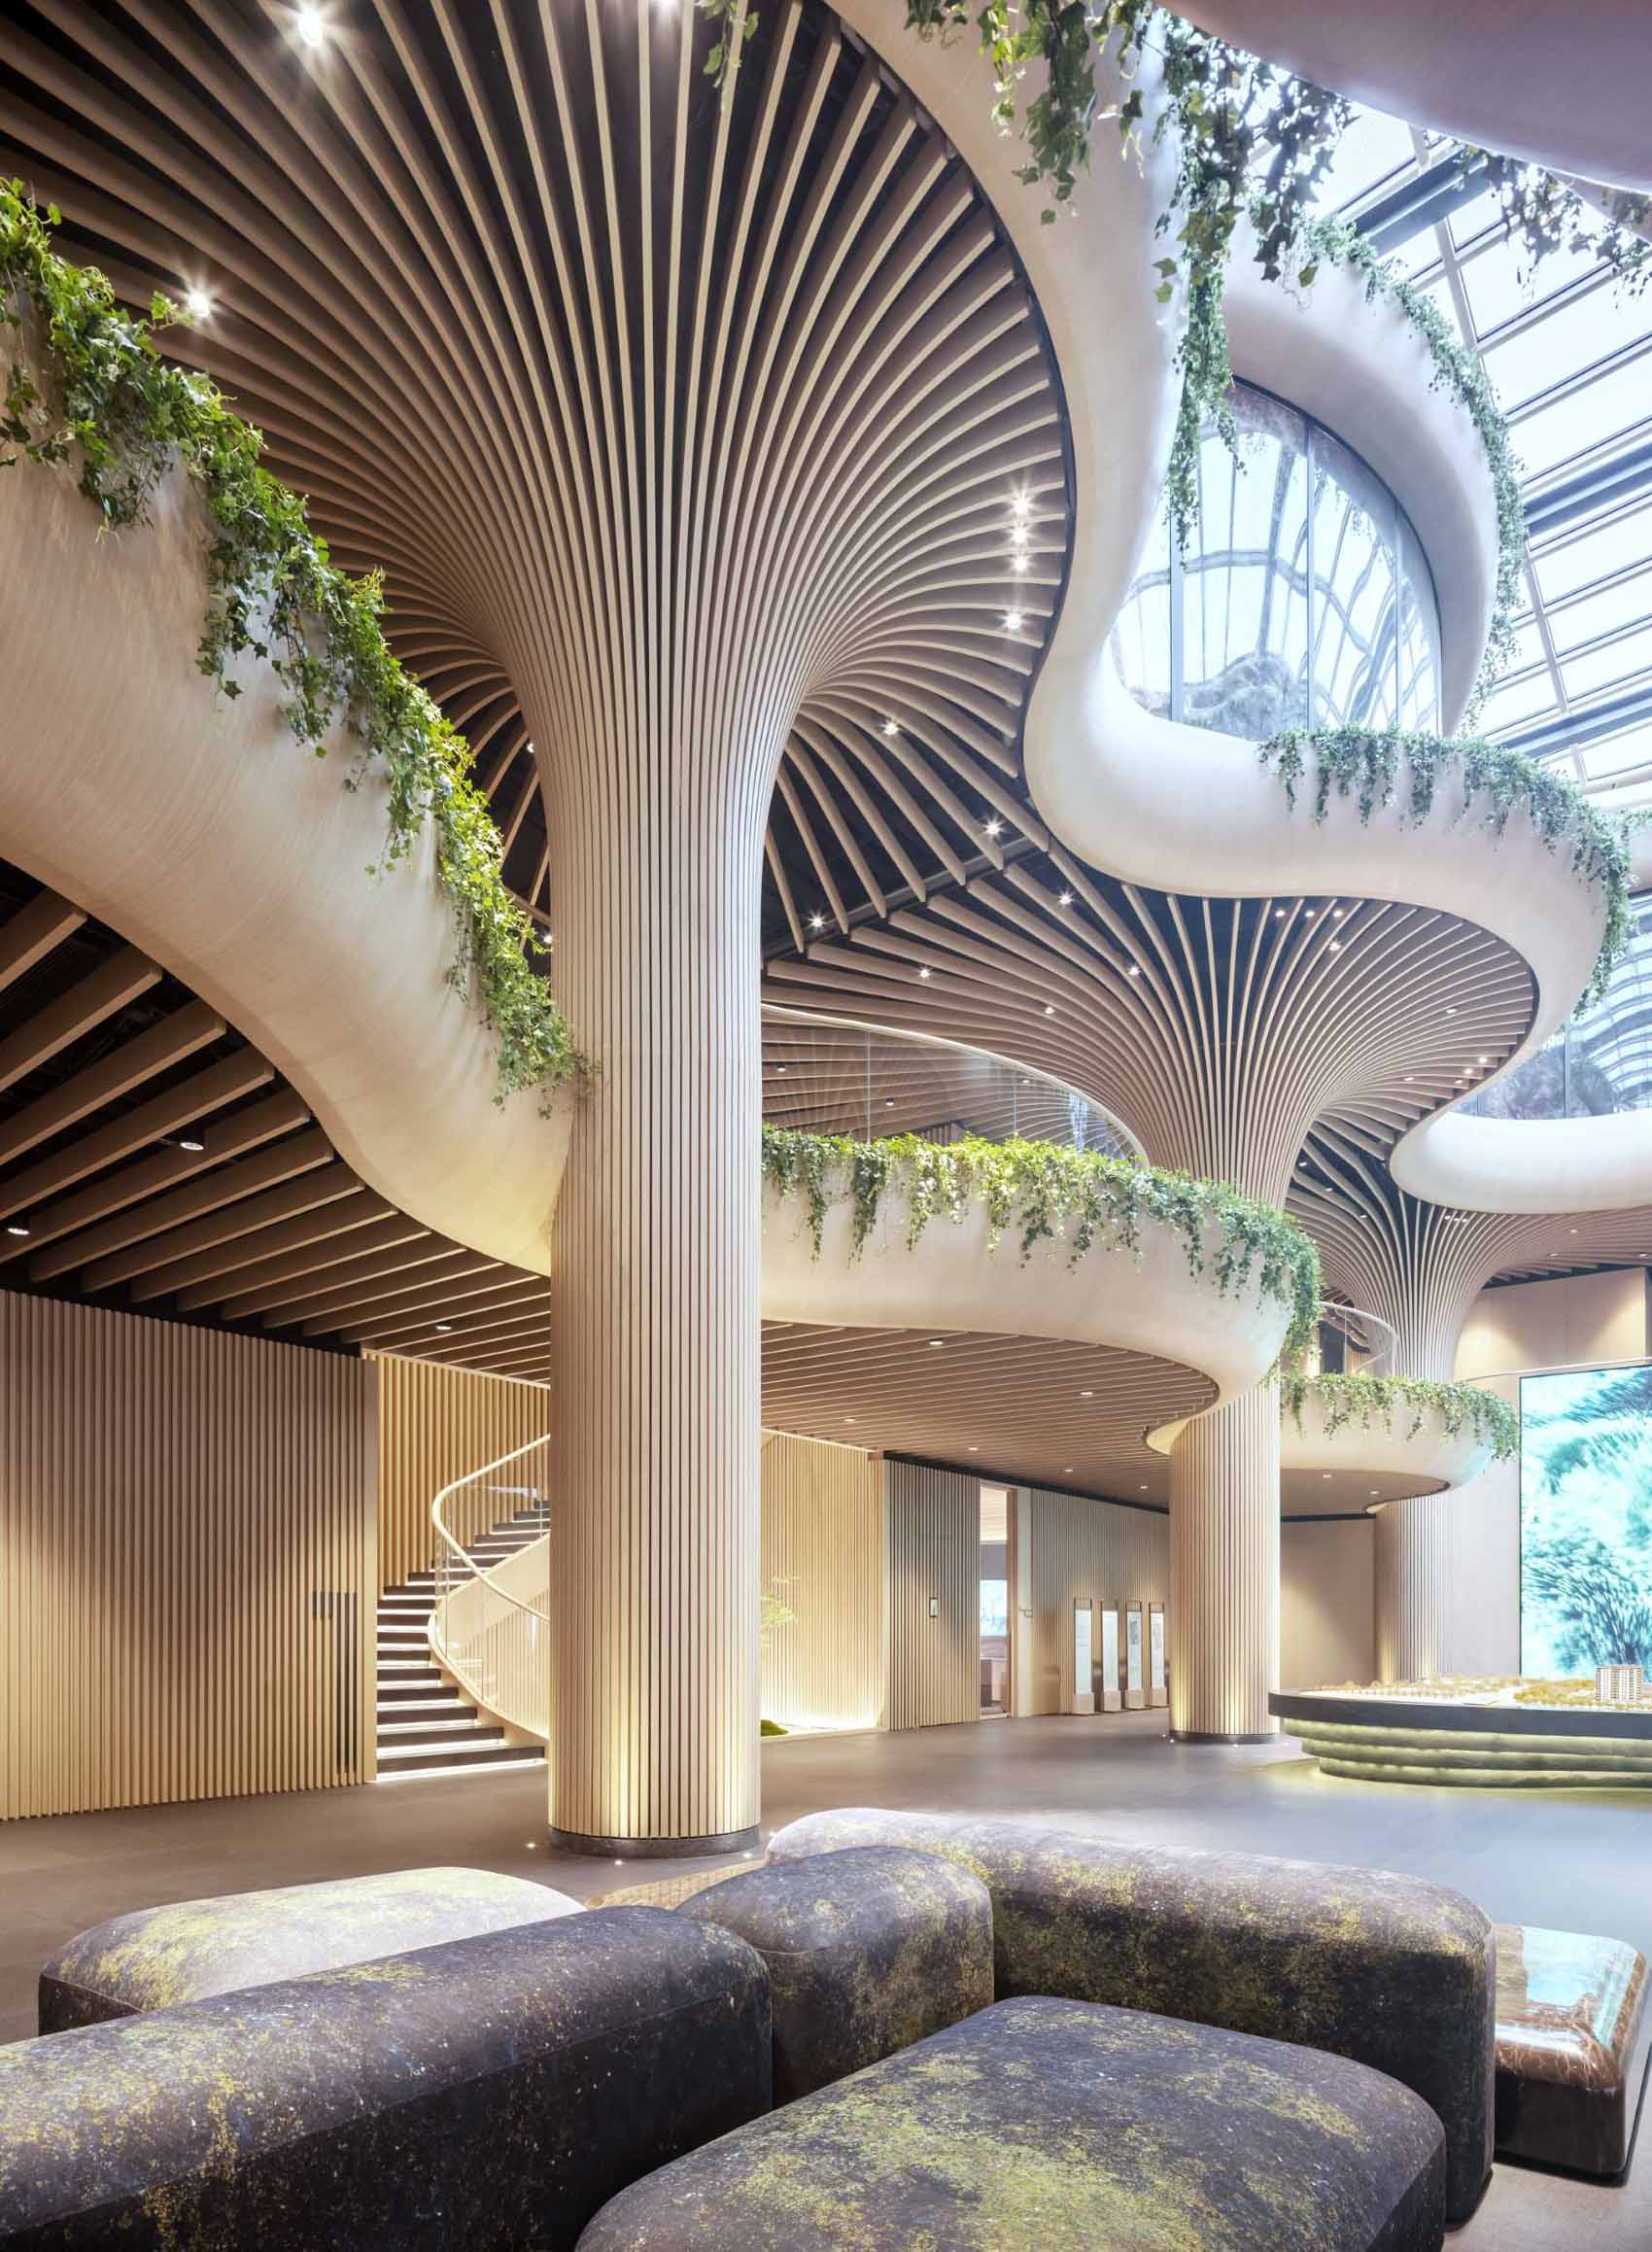 Современное здание, дизайн которого вдохновлен деревьями.